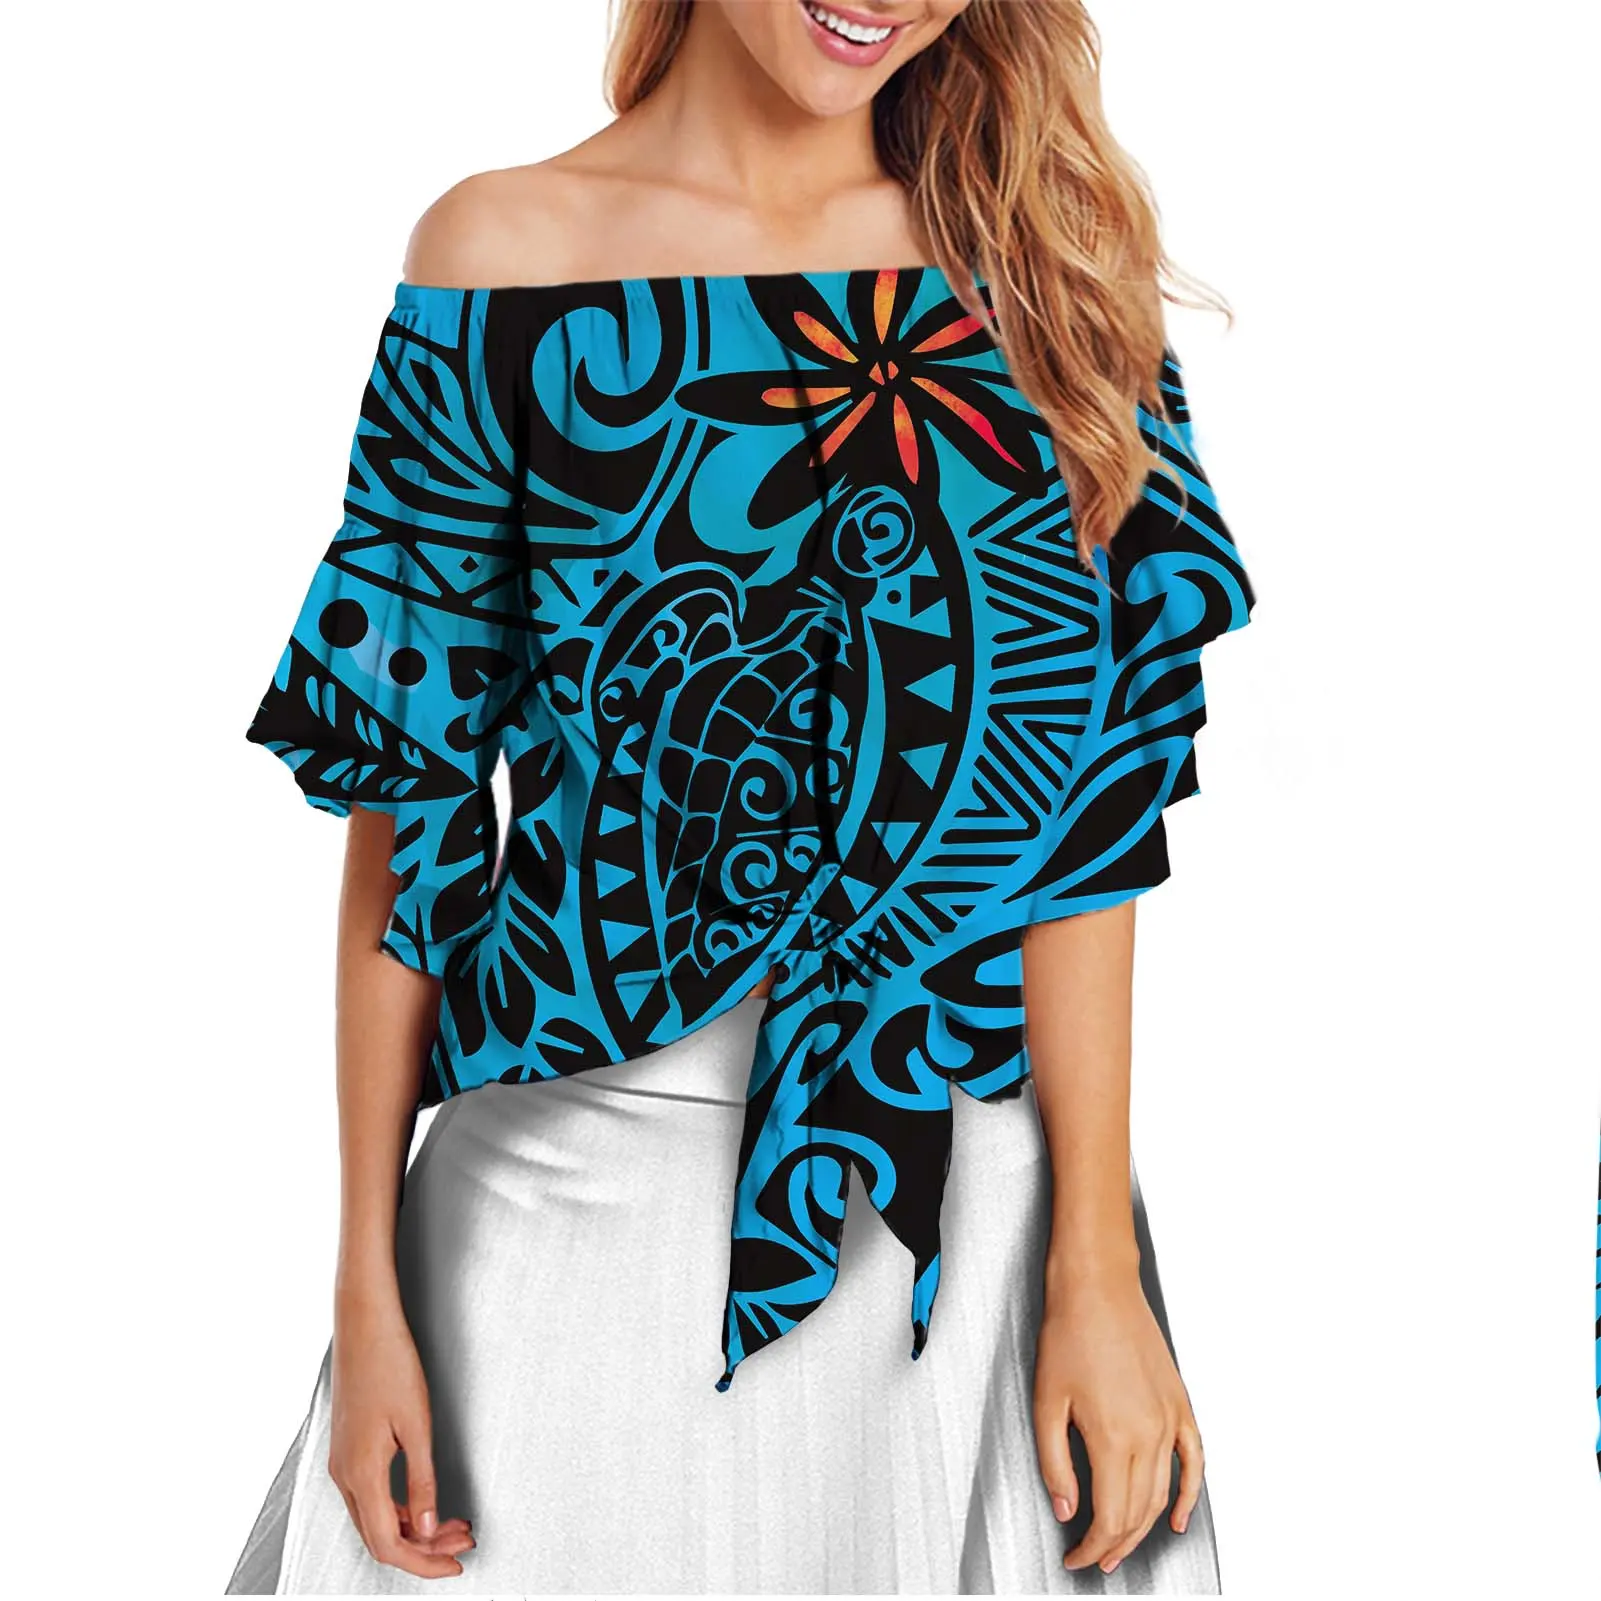 디자이너 캐주얼 블라우스 하와이 열대 패턴 섹시한 쉬폰 셔츠 여성 블라우스 캐주얼 플러스 사이즈 여성 블라우스